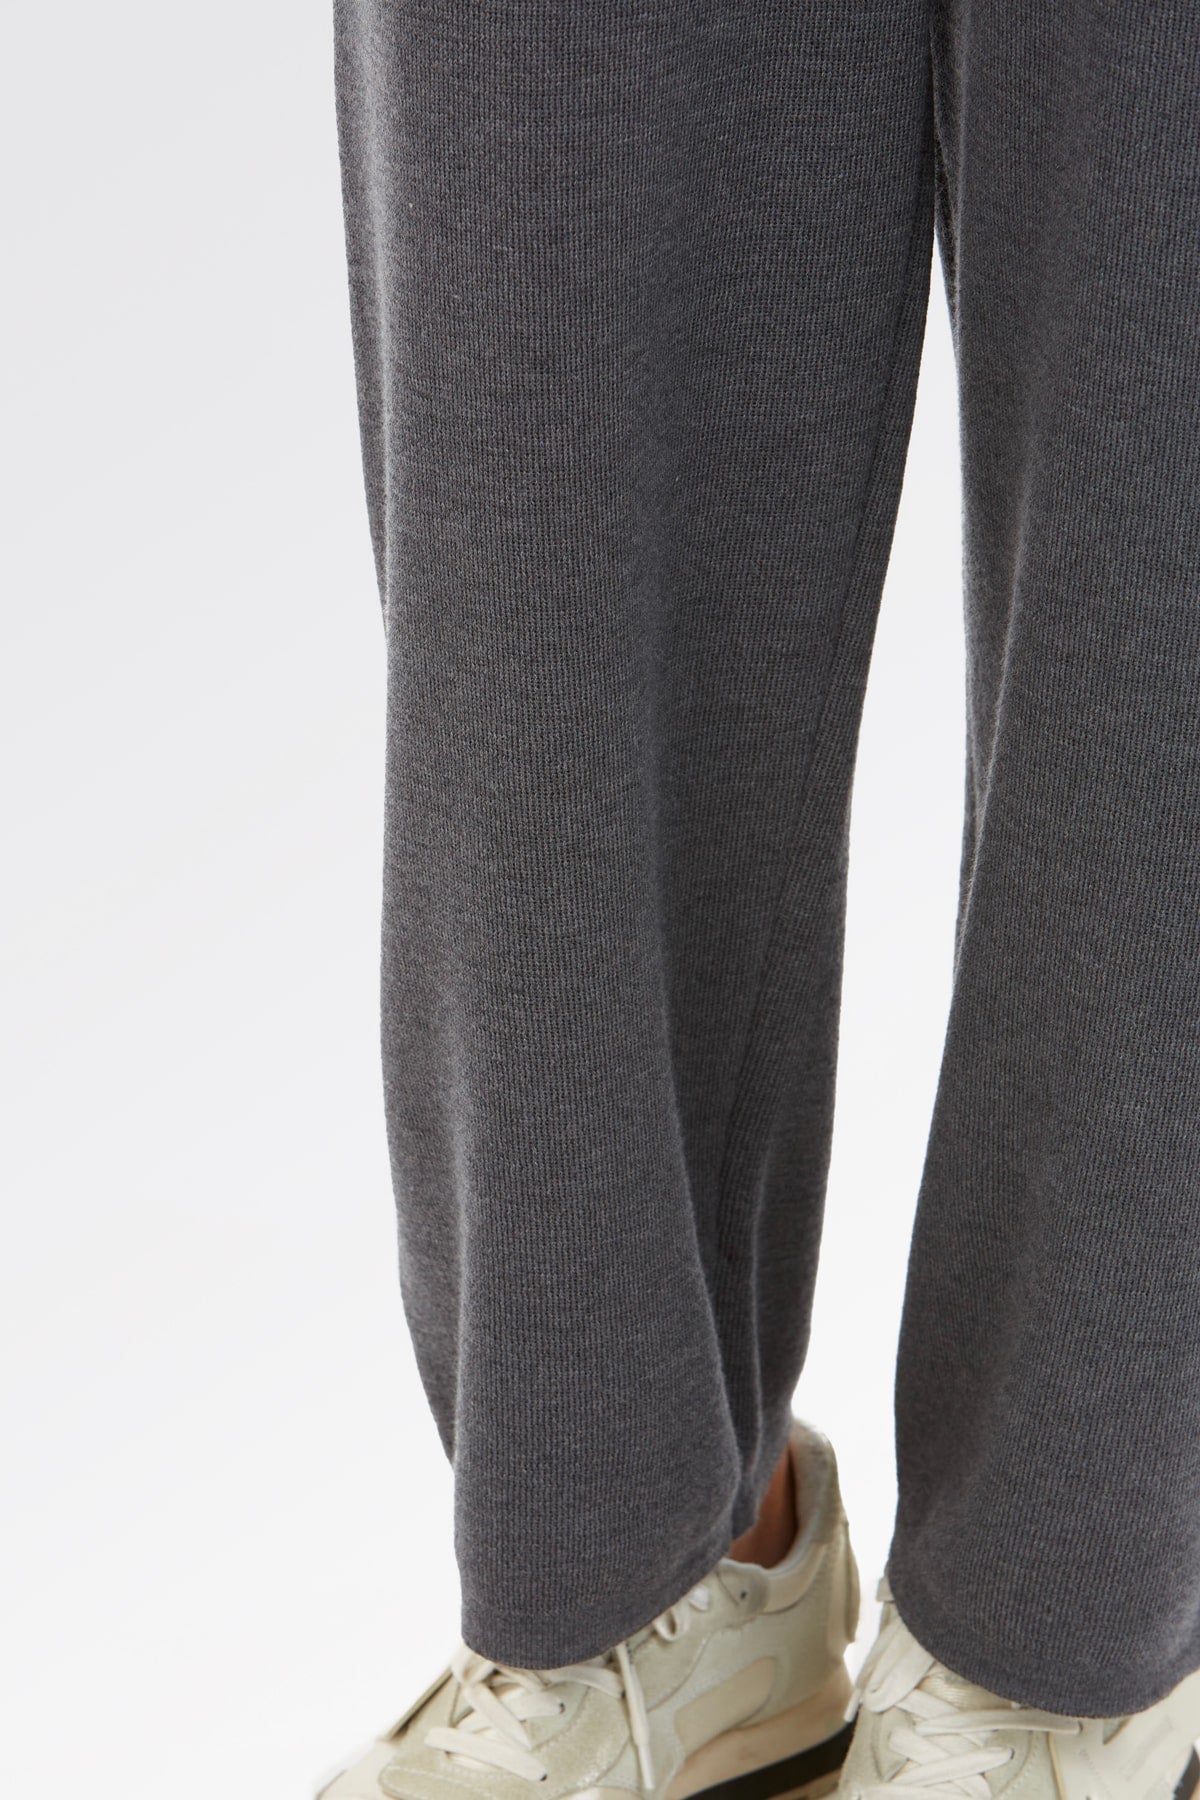 Pantaloni Active Wear da Donna in 100% Lana Merino - Brunella Gori